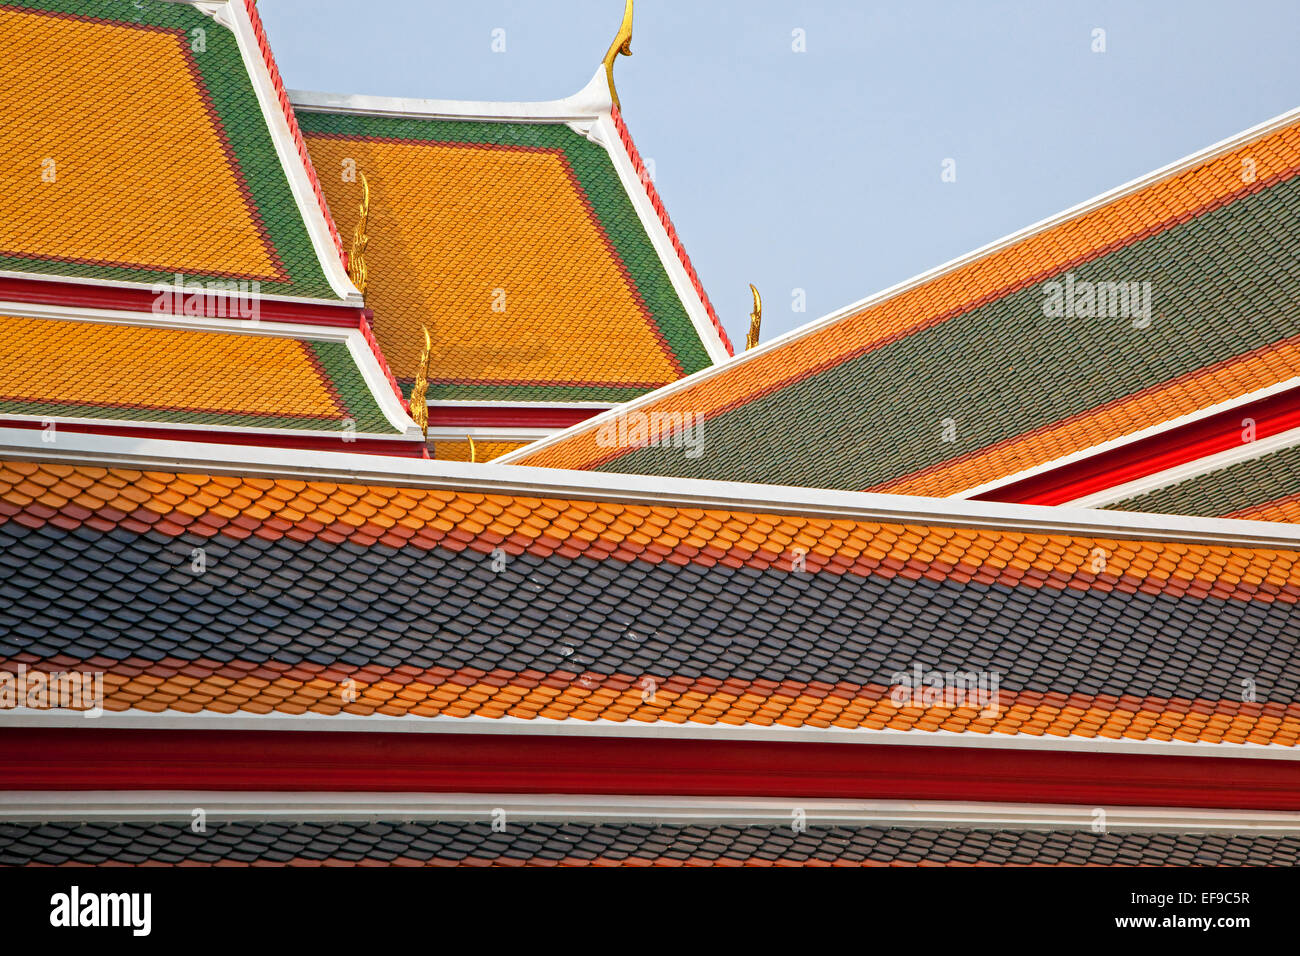 Tuiles de couleurs sur les toits du temple Wat Pho / complexe de le Bouddha couché, temple bouddhiste, Phra Nakhon, Thaïlande Banque D'Images